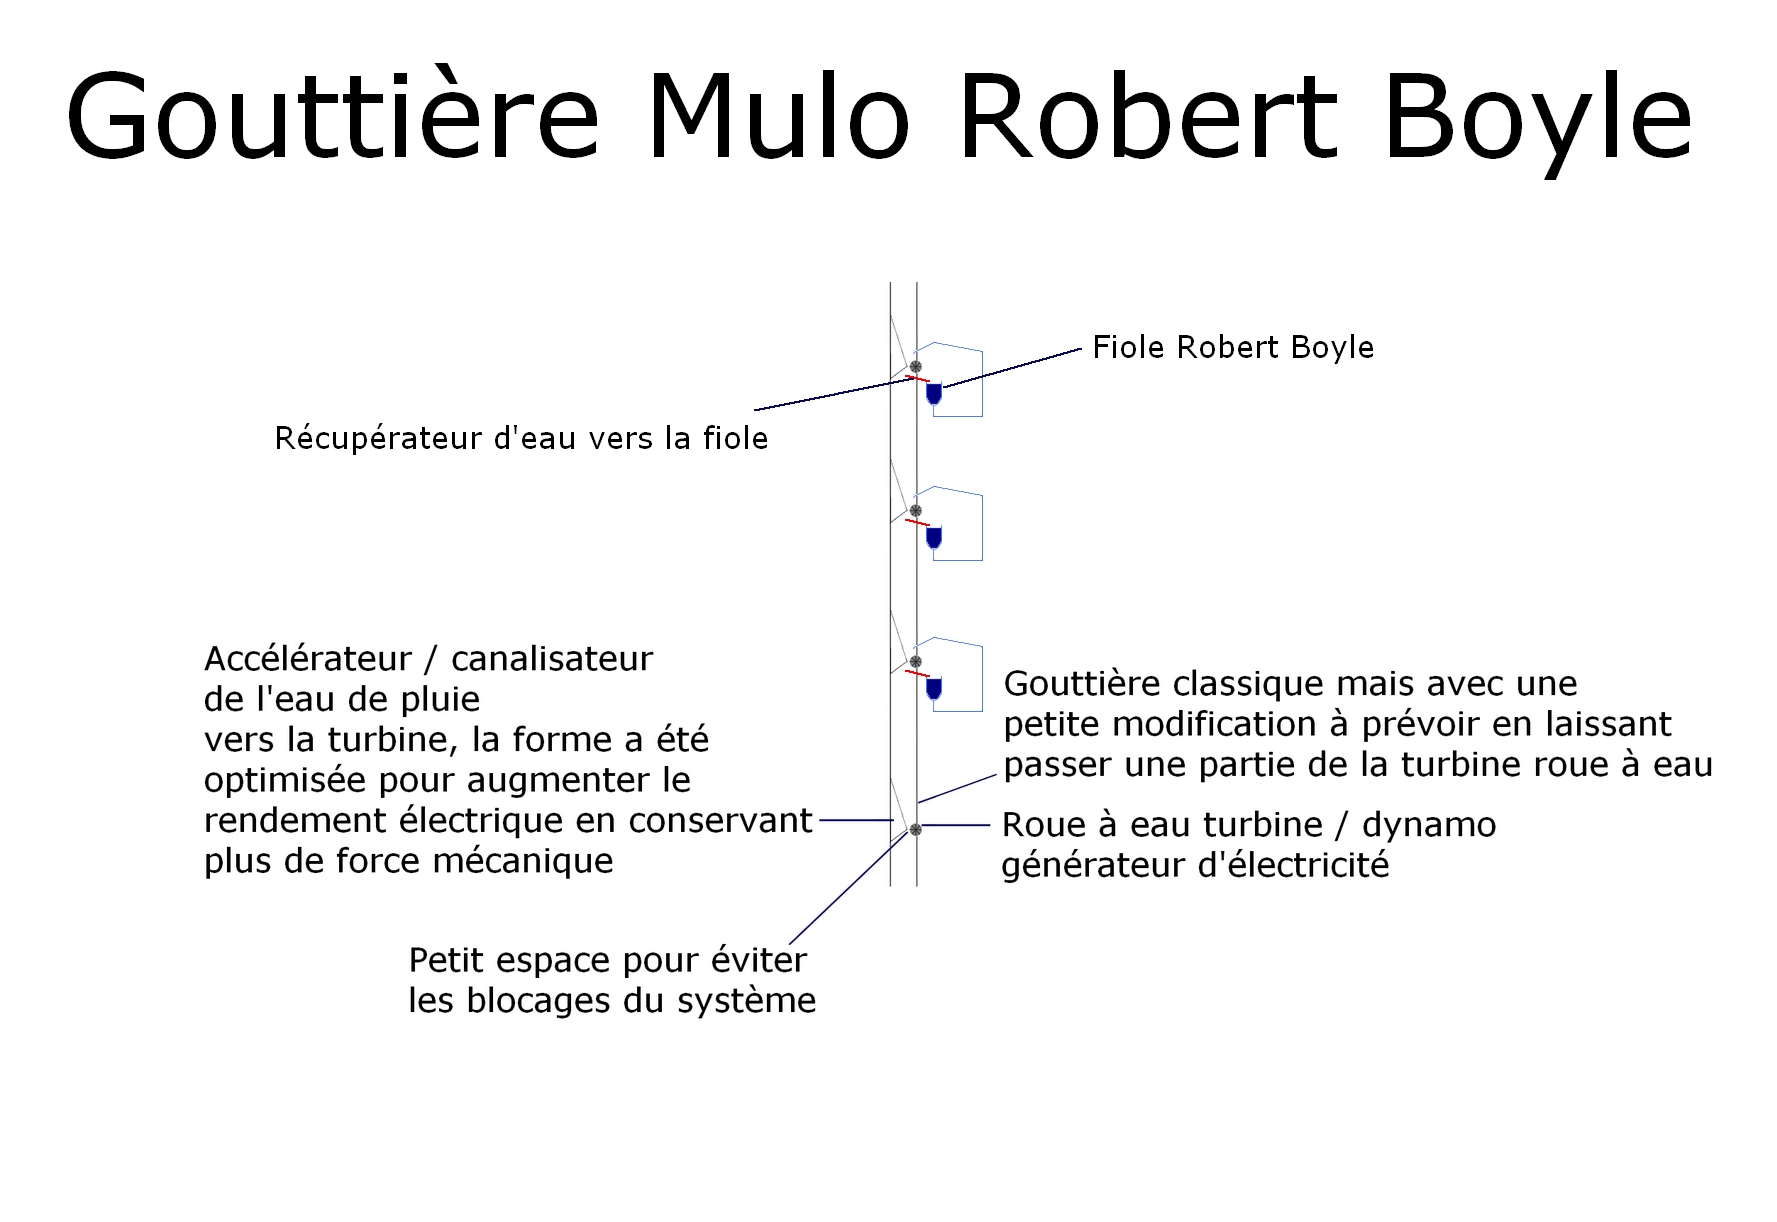 La gouttière Mulo Robert Boyle